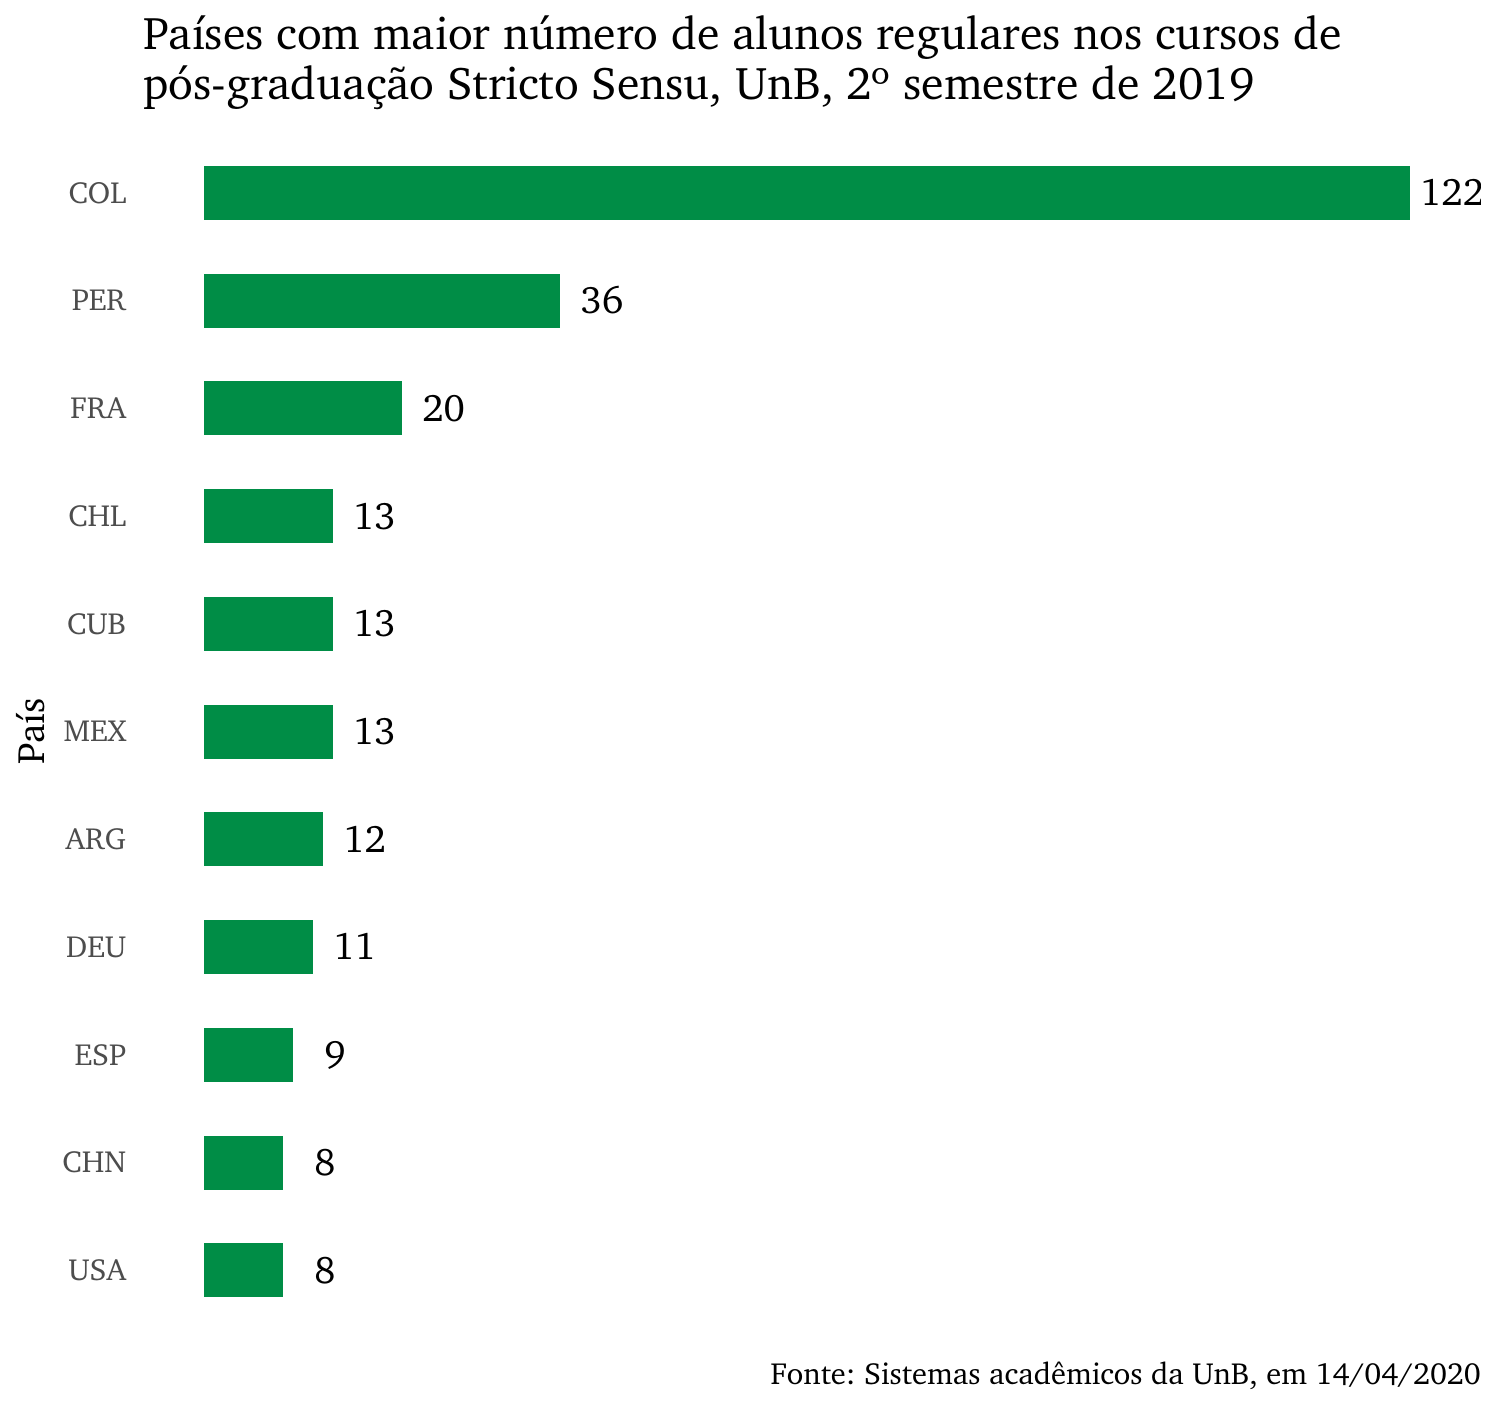 Países com maior número de alunos regulares nos cursos de pós-graduação Stricto Sensu, UnB, 2º semestre de 2019